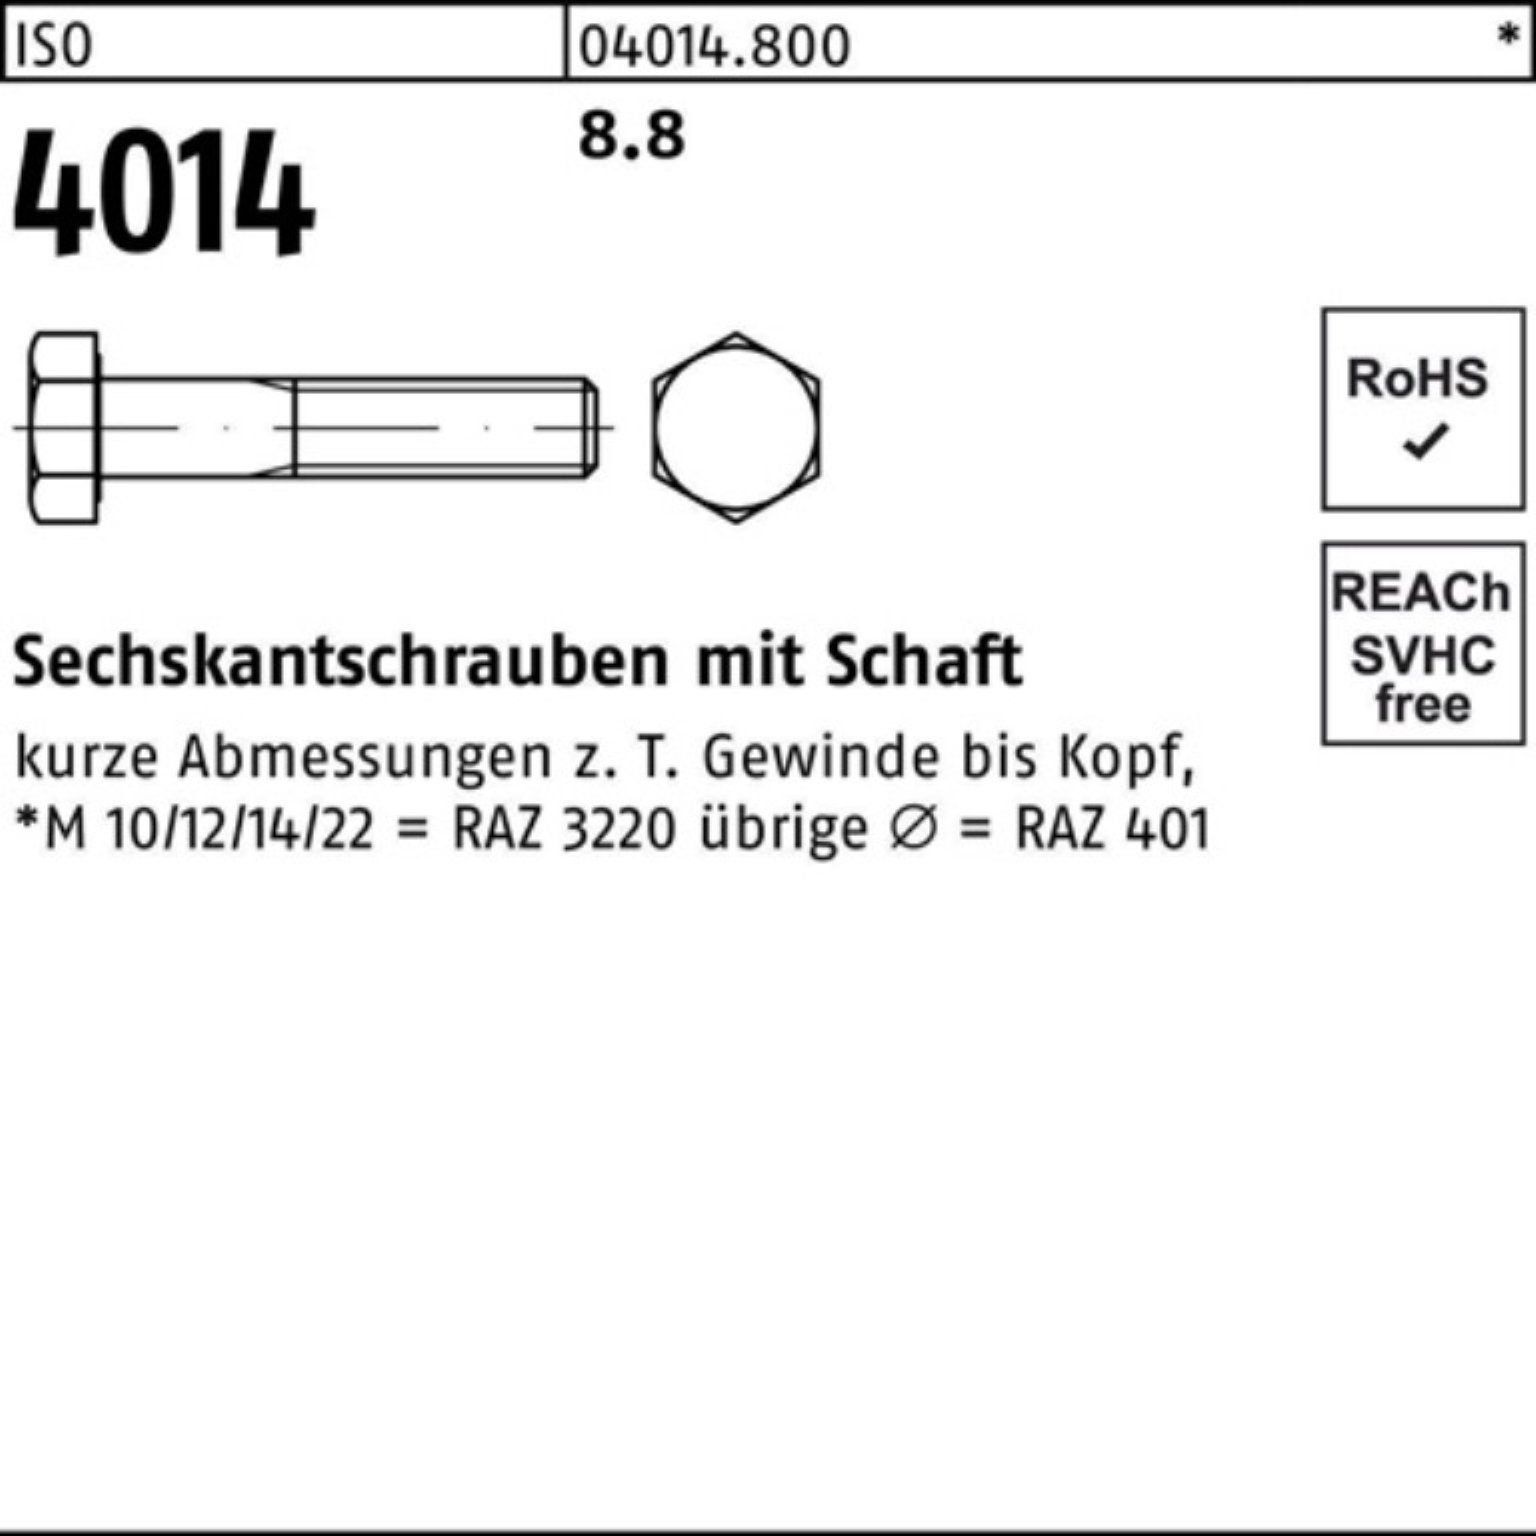 Bufab Sechskantschraube 220 Schaft ISO ISO Stück Sechskantschraube M18x 1 4014 100er Pack 8.8